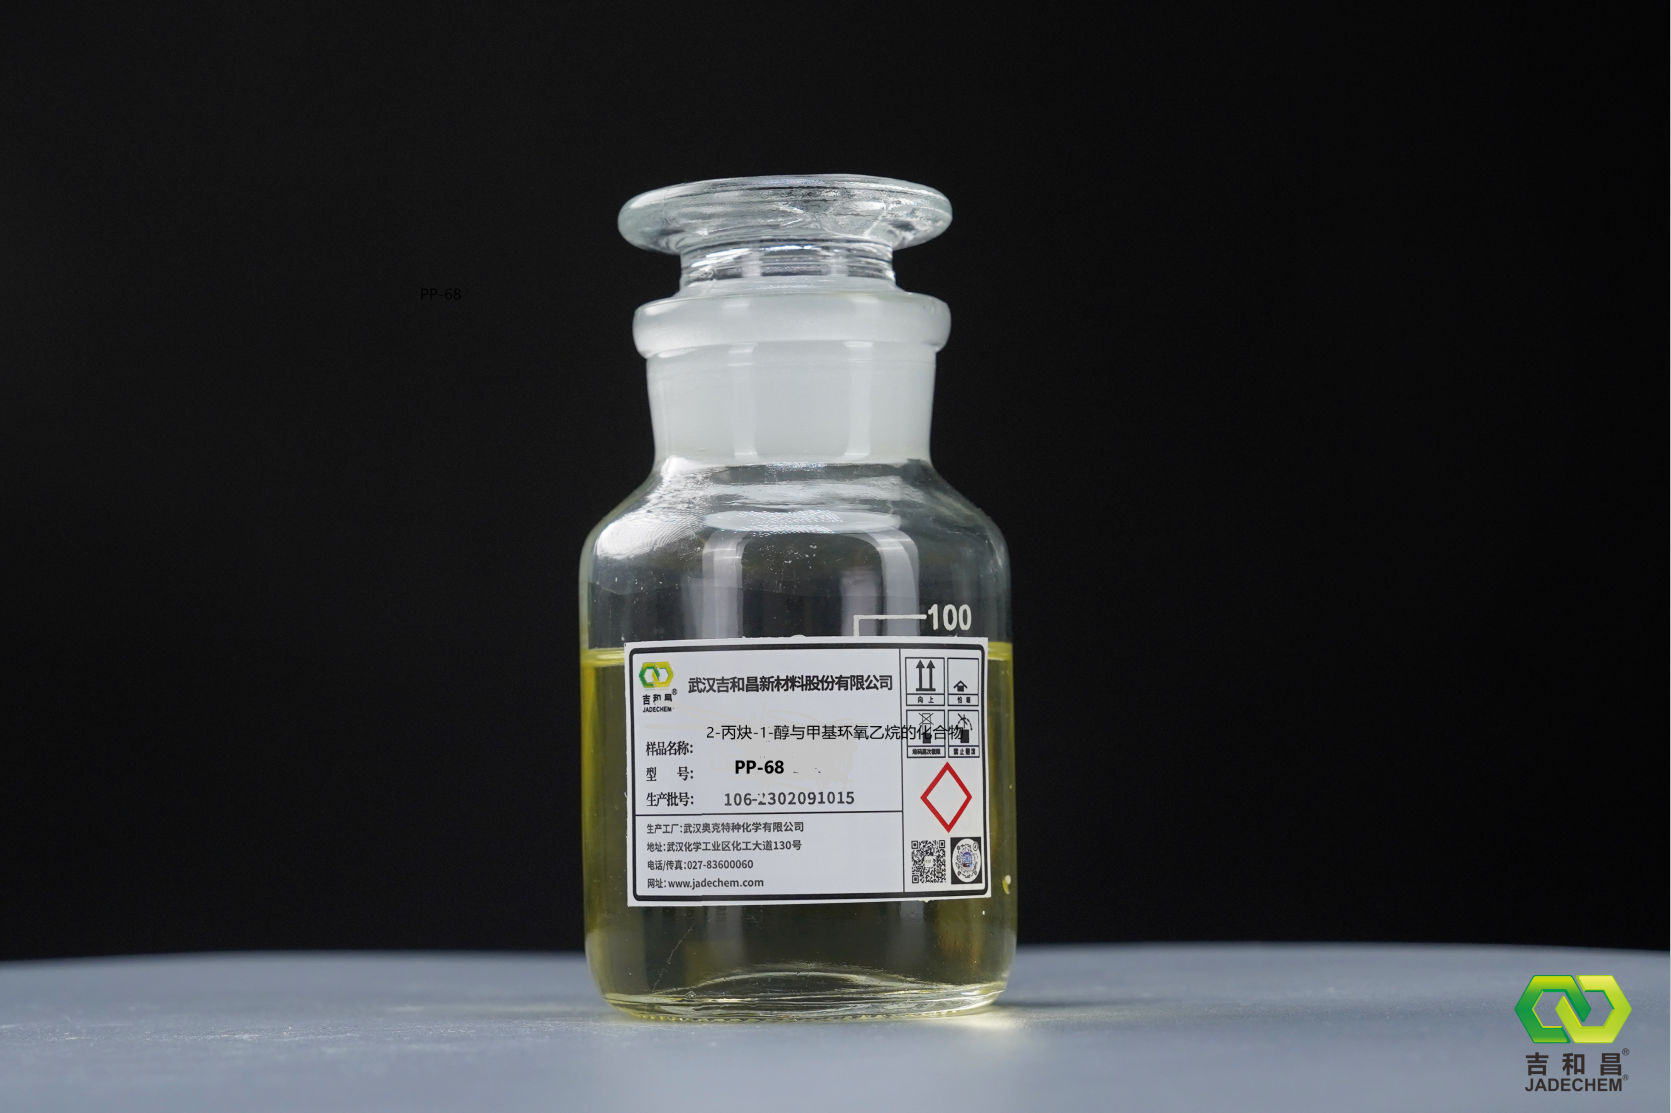  2-丙炔-1-醇與甲基環氧乙烷的化合物（PP -68緩蝕劑）